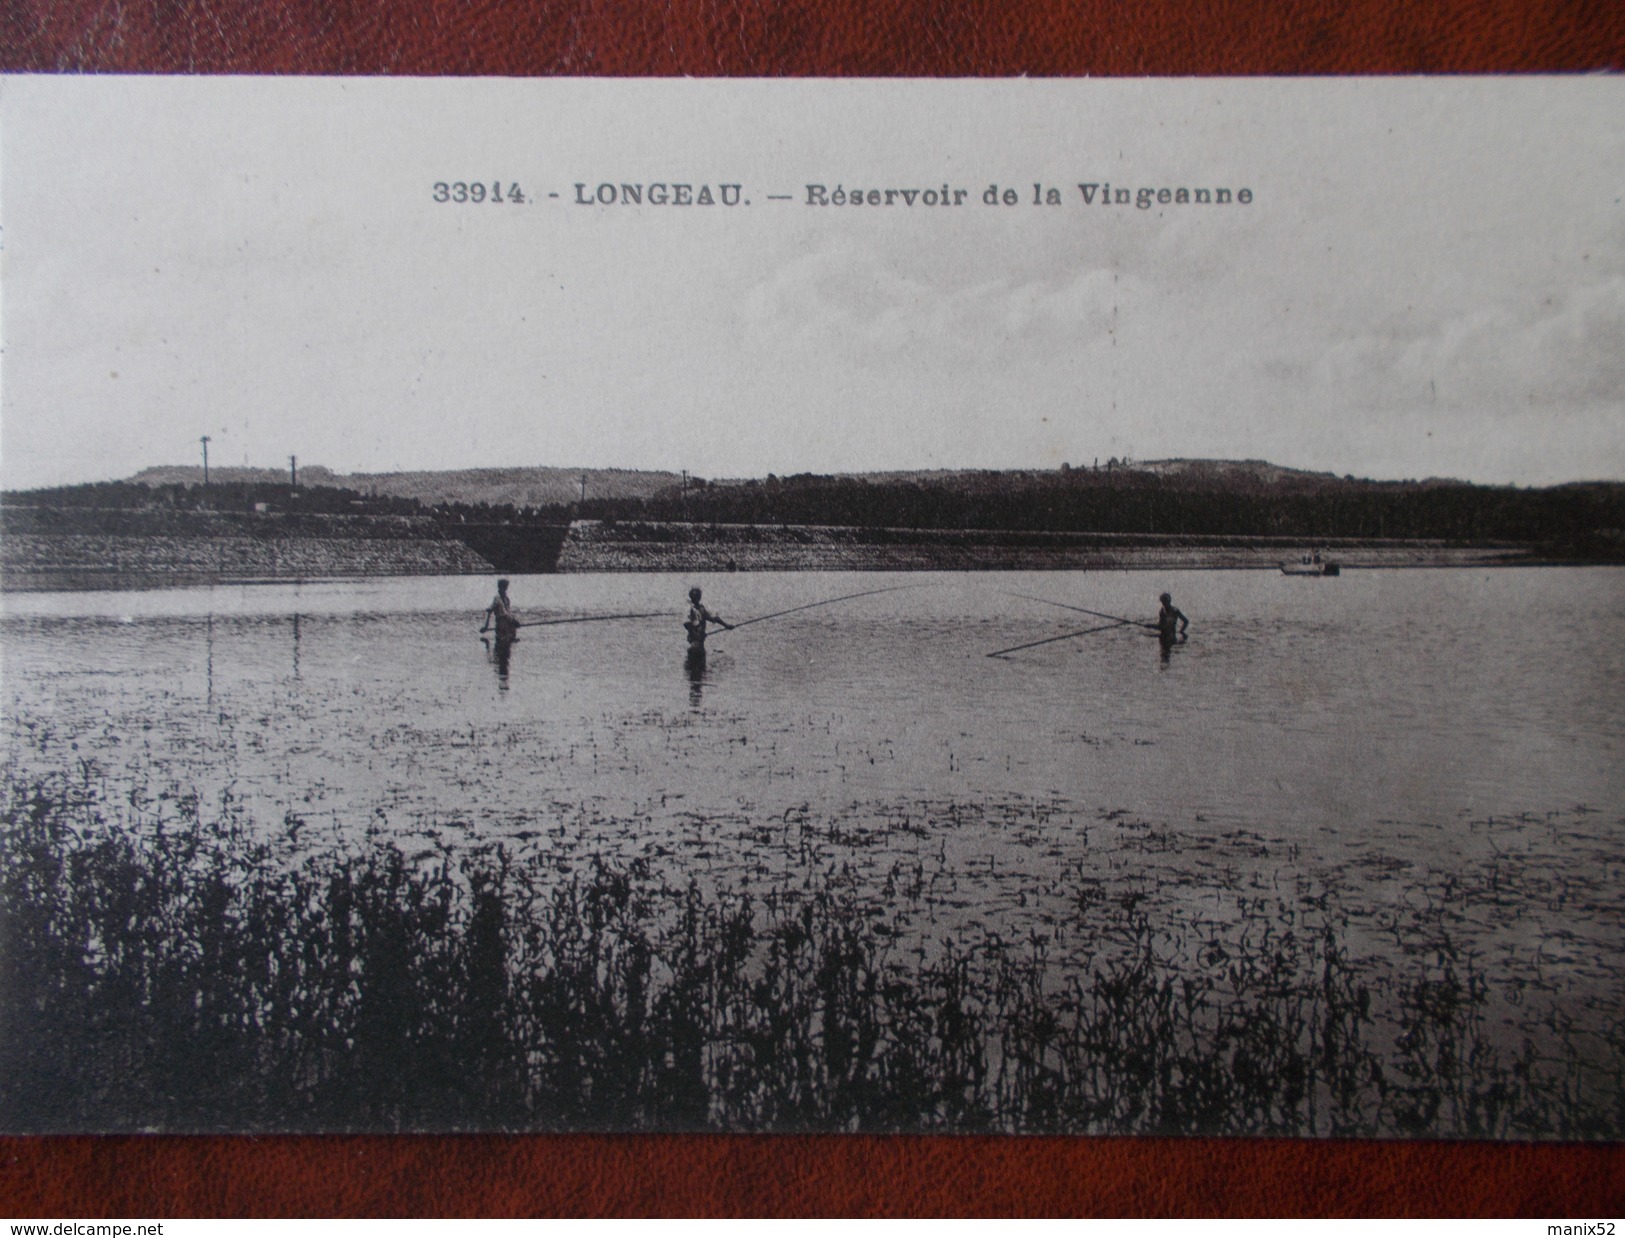 52 - LONGEAU - Réservoir De La Vingeanne. (Pêcheurs à La Ligne) - Le Vallinot Longeau Percey